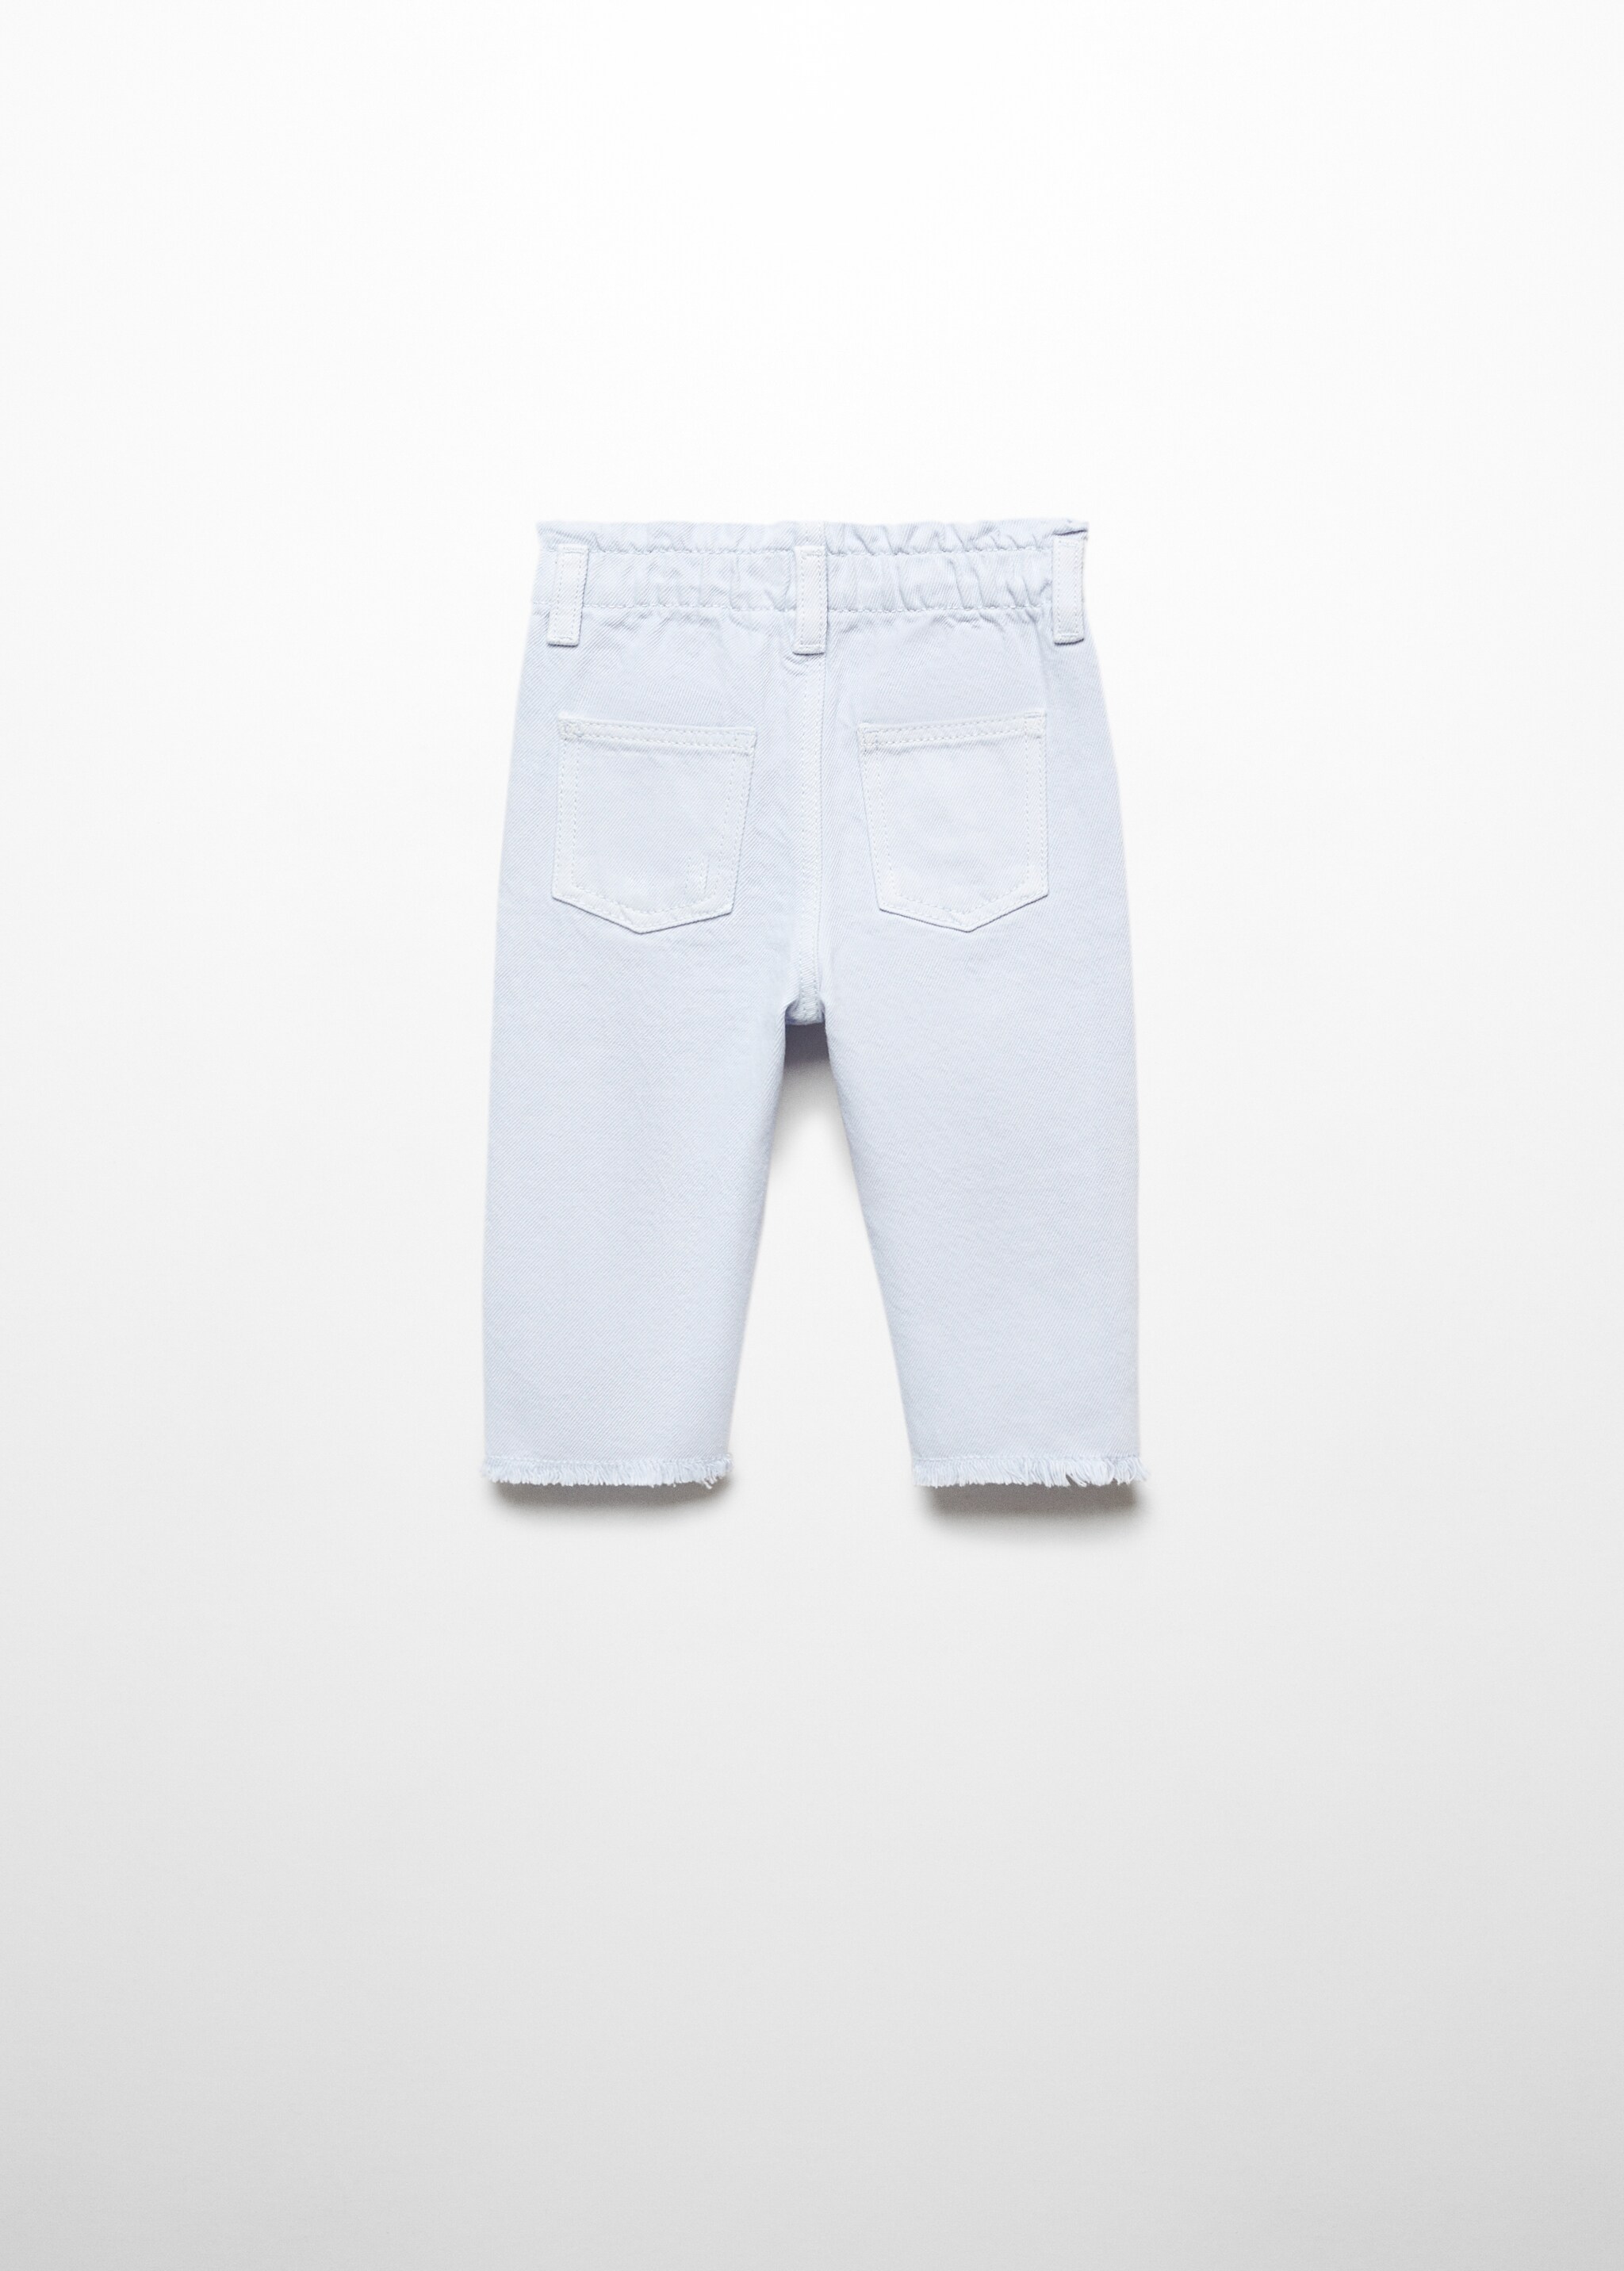 سروال جينز بيبر باج - الجهة الخلفية للمنتج